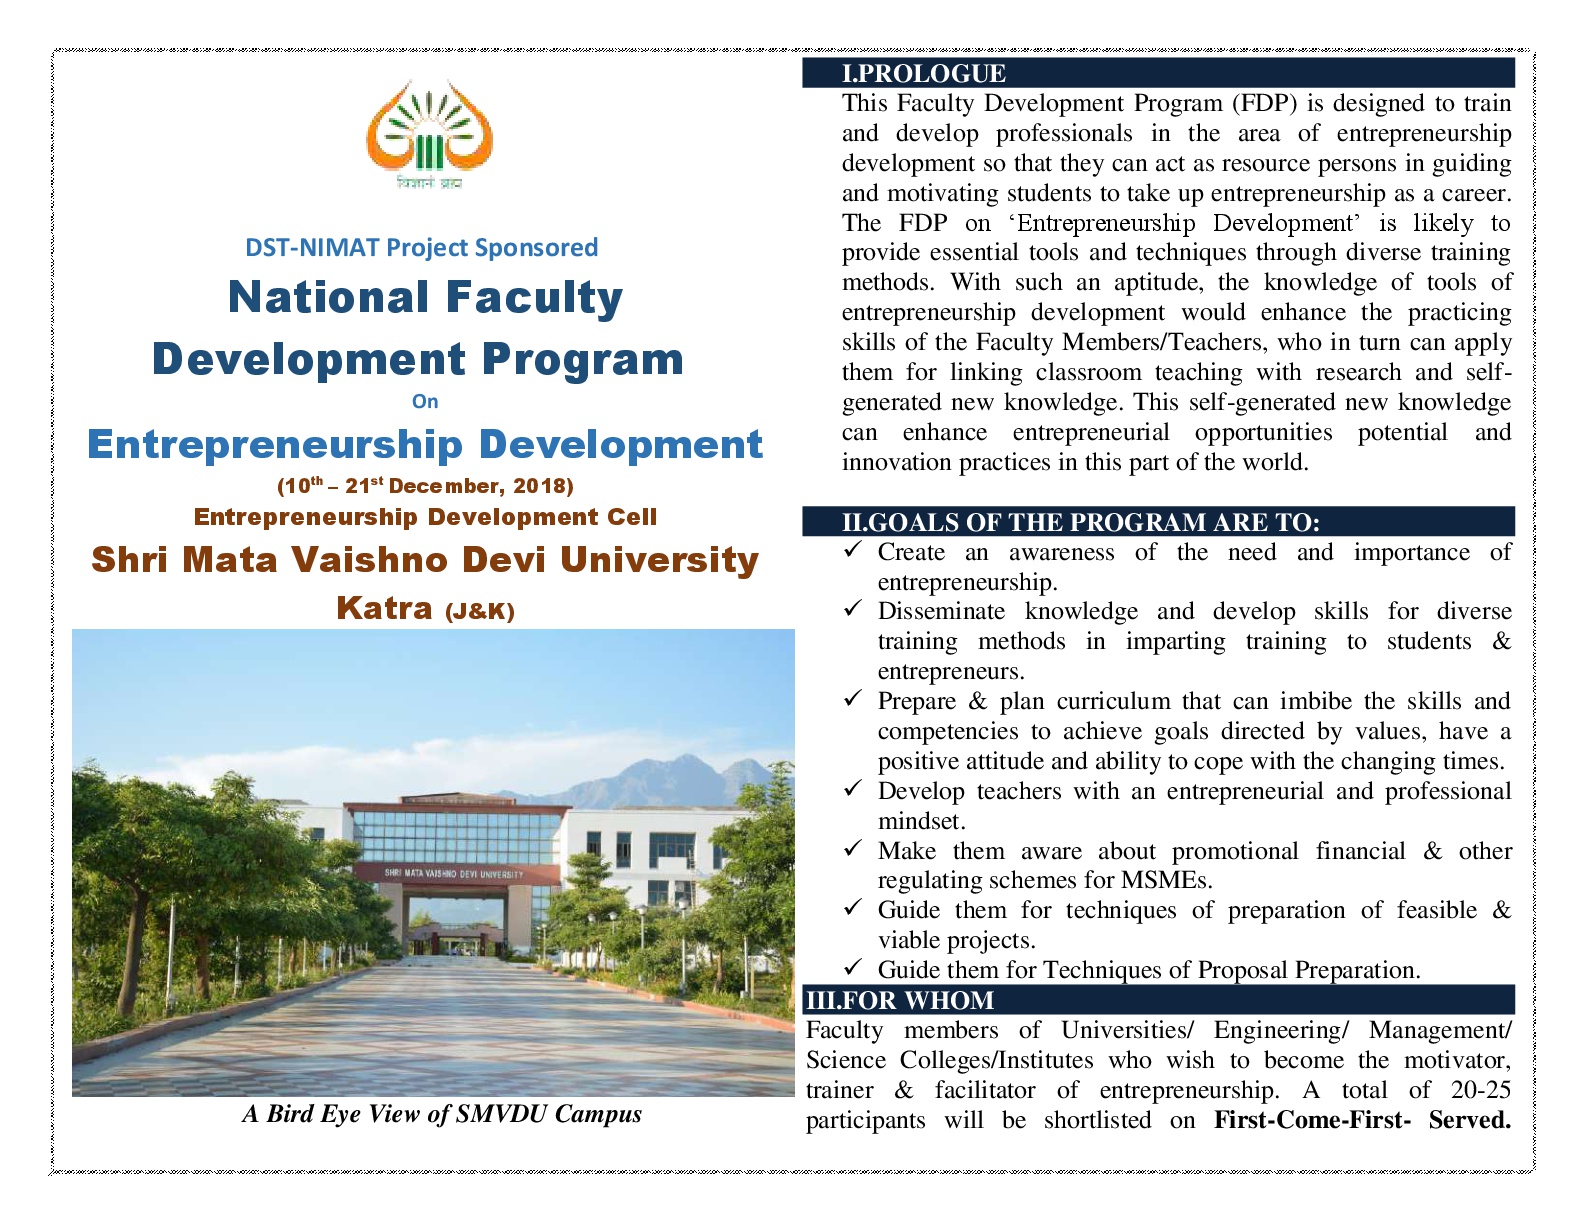 DST NIMAT Project Sponsored National Faculty Development Program On Entrepreneurship Development1